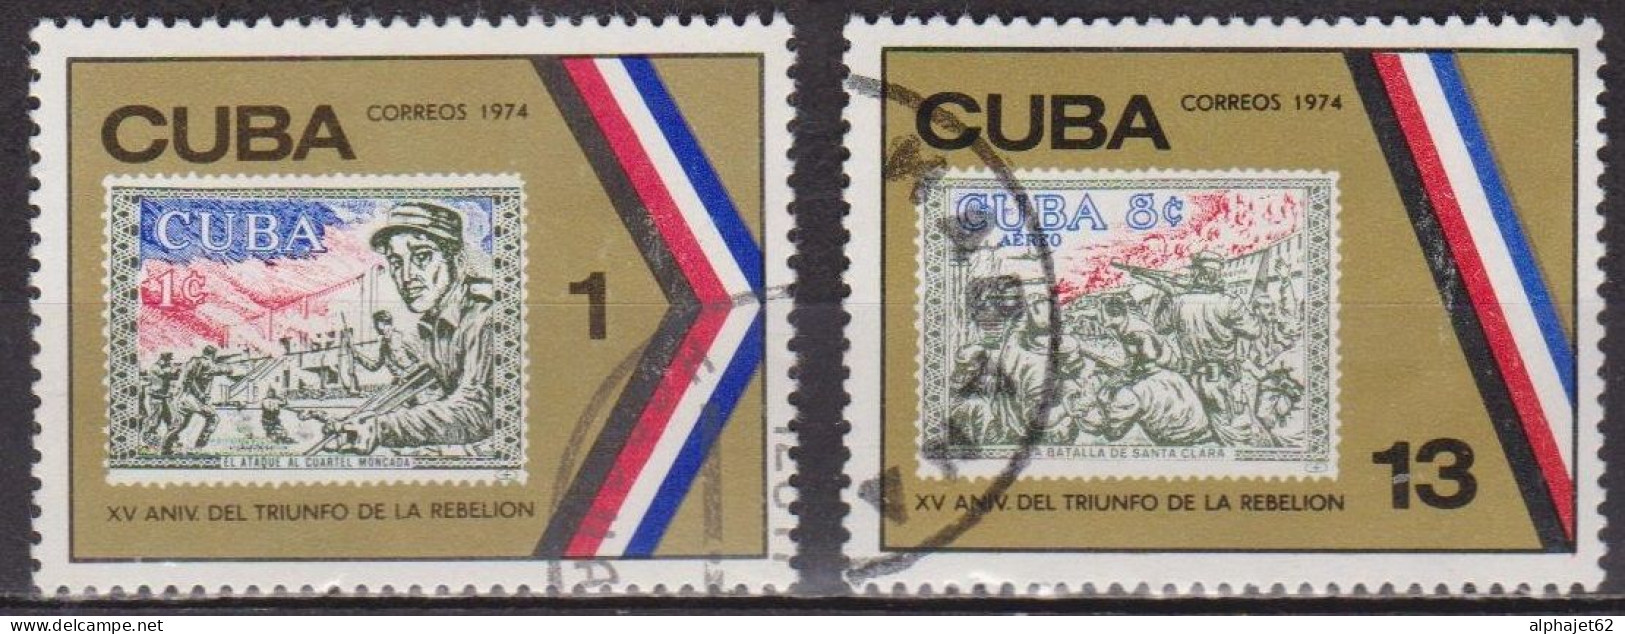 Révolution - CUBA - Timbres Sur Timbres - N° 1729-1731 - 1974 - Usados